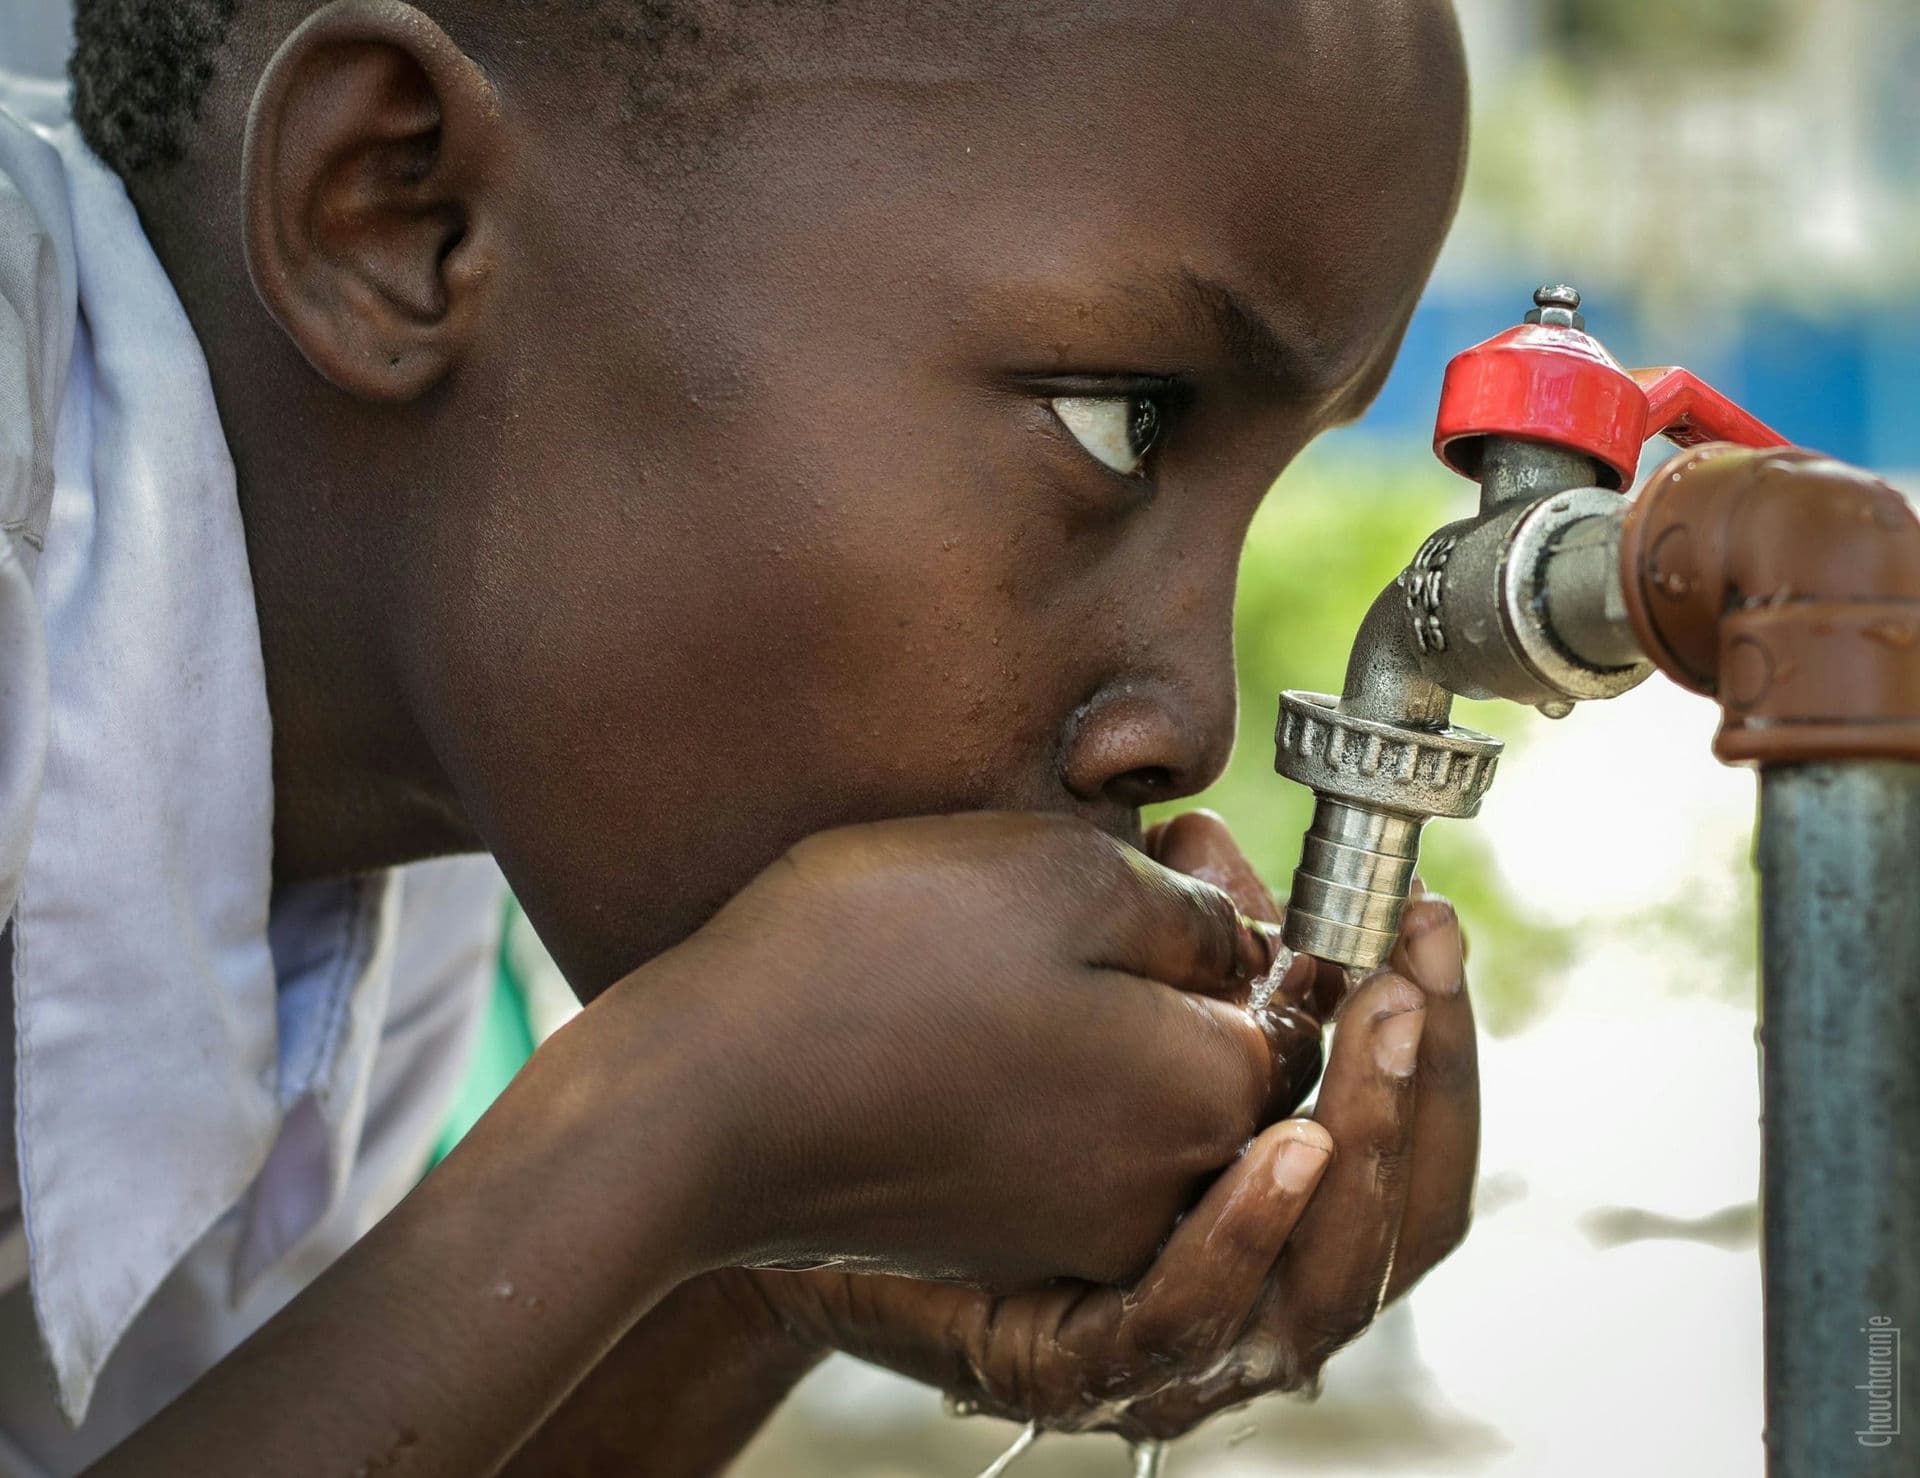 Children drinking water in Africa